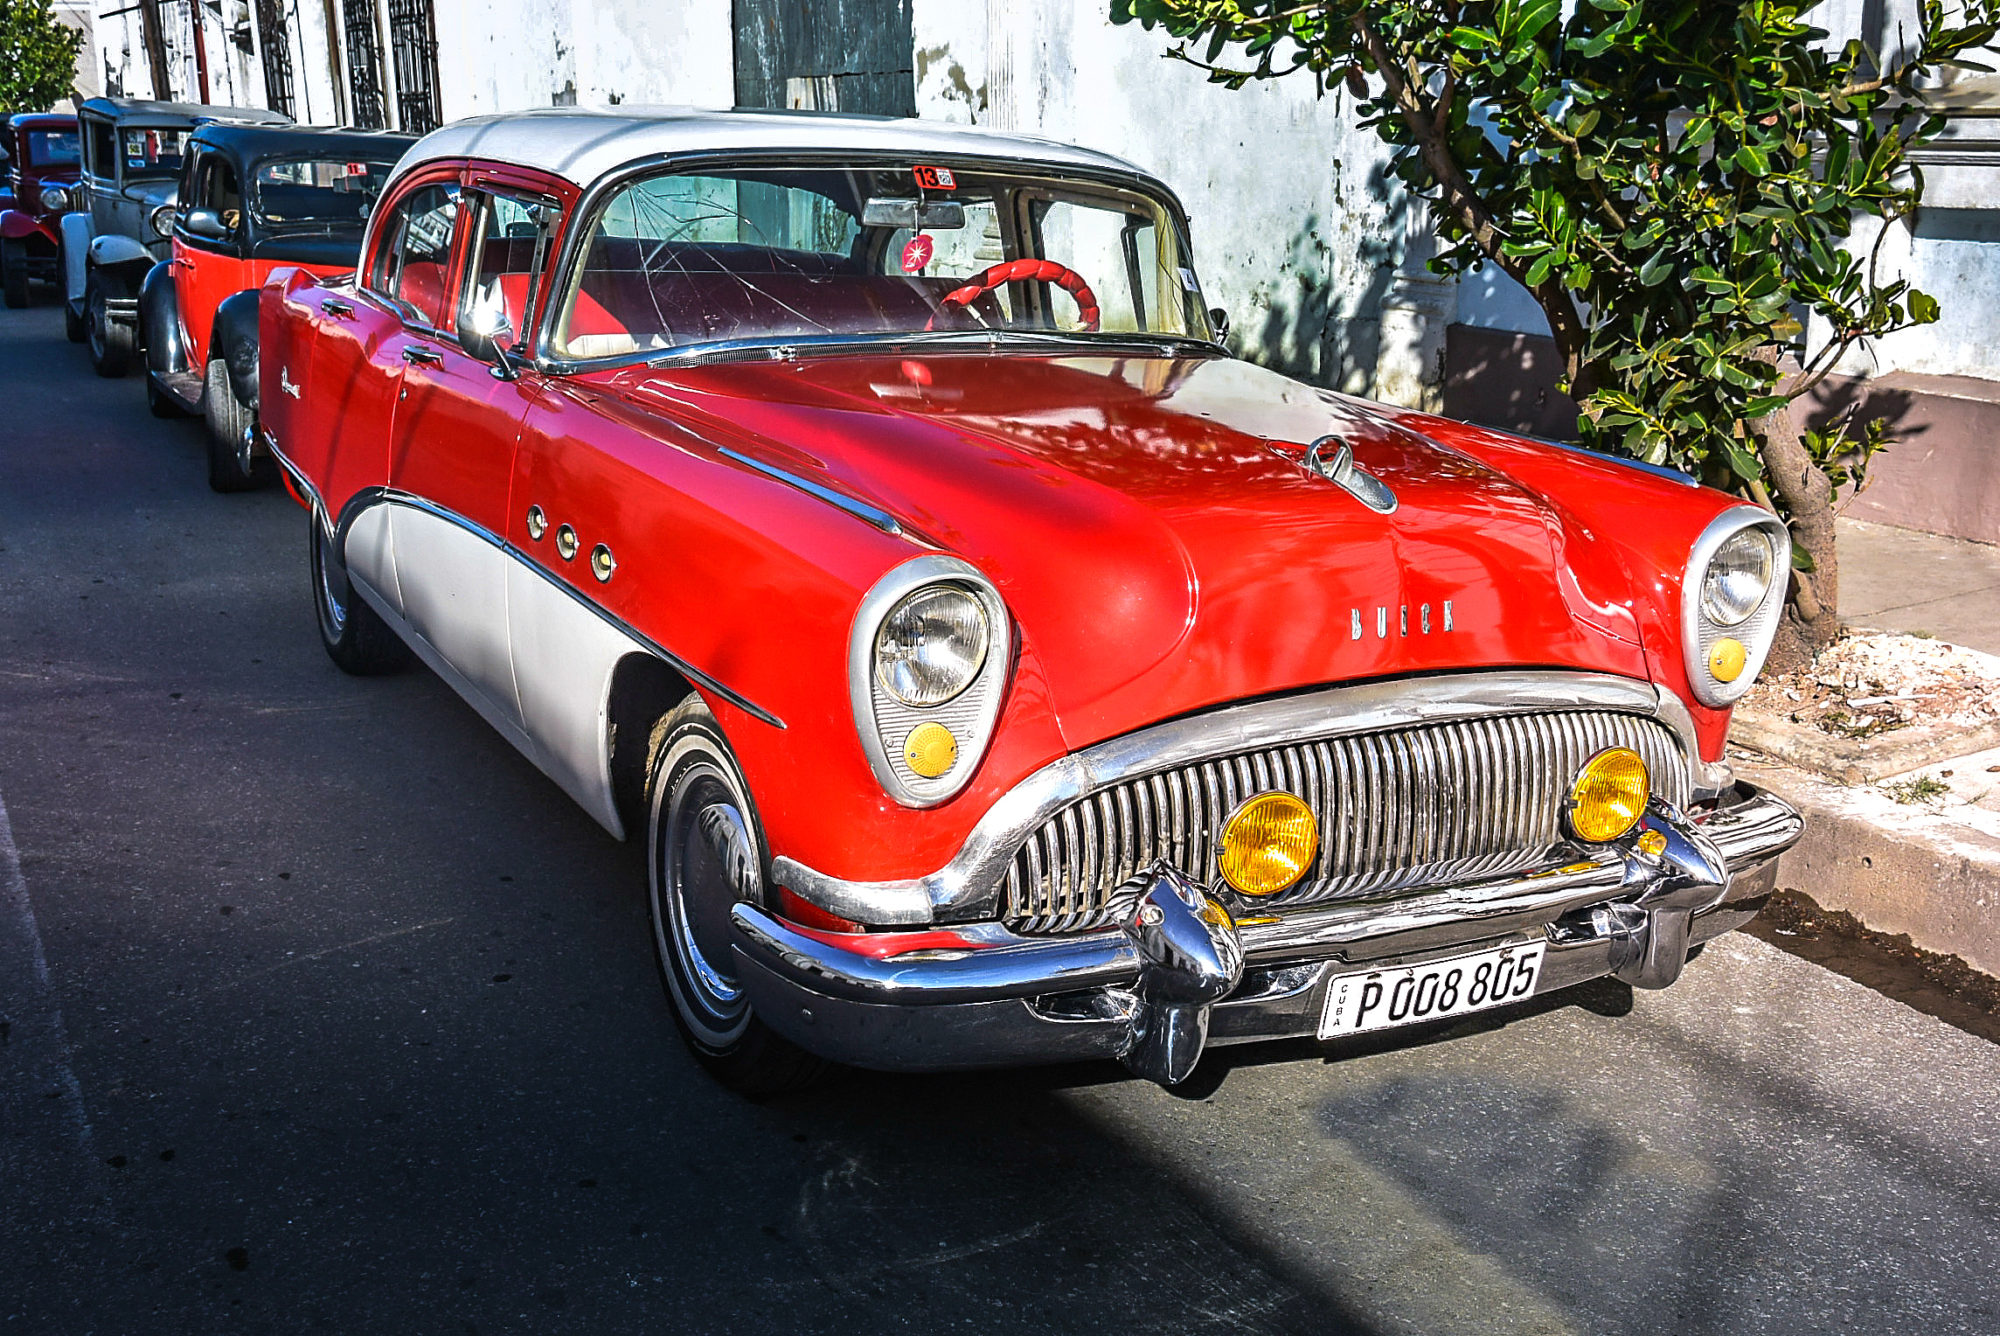 Classy Cars in Cuba